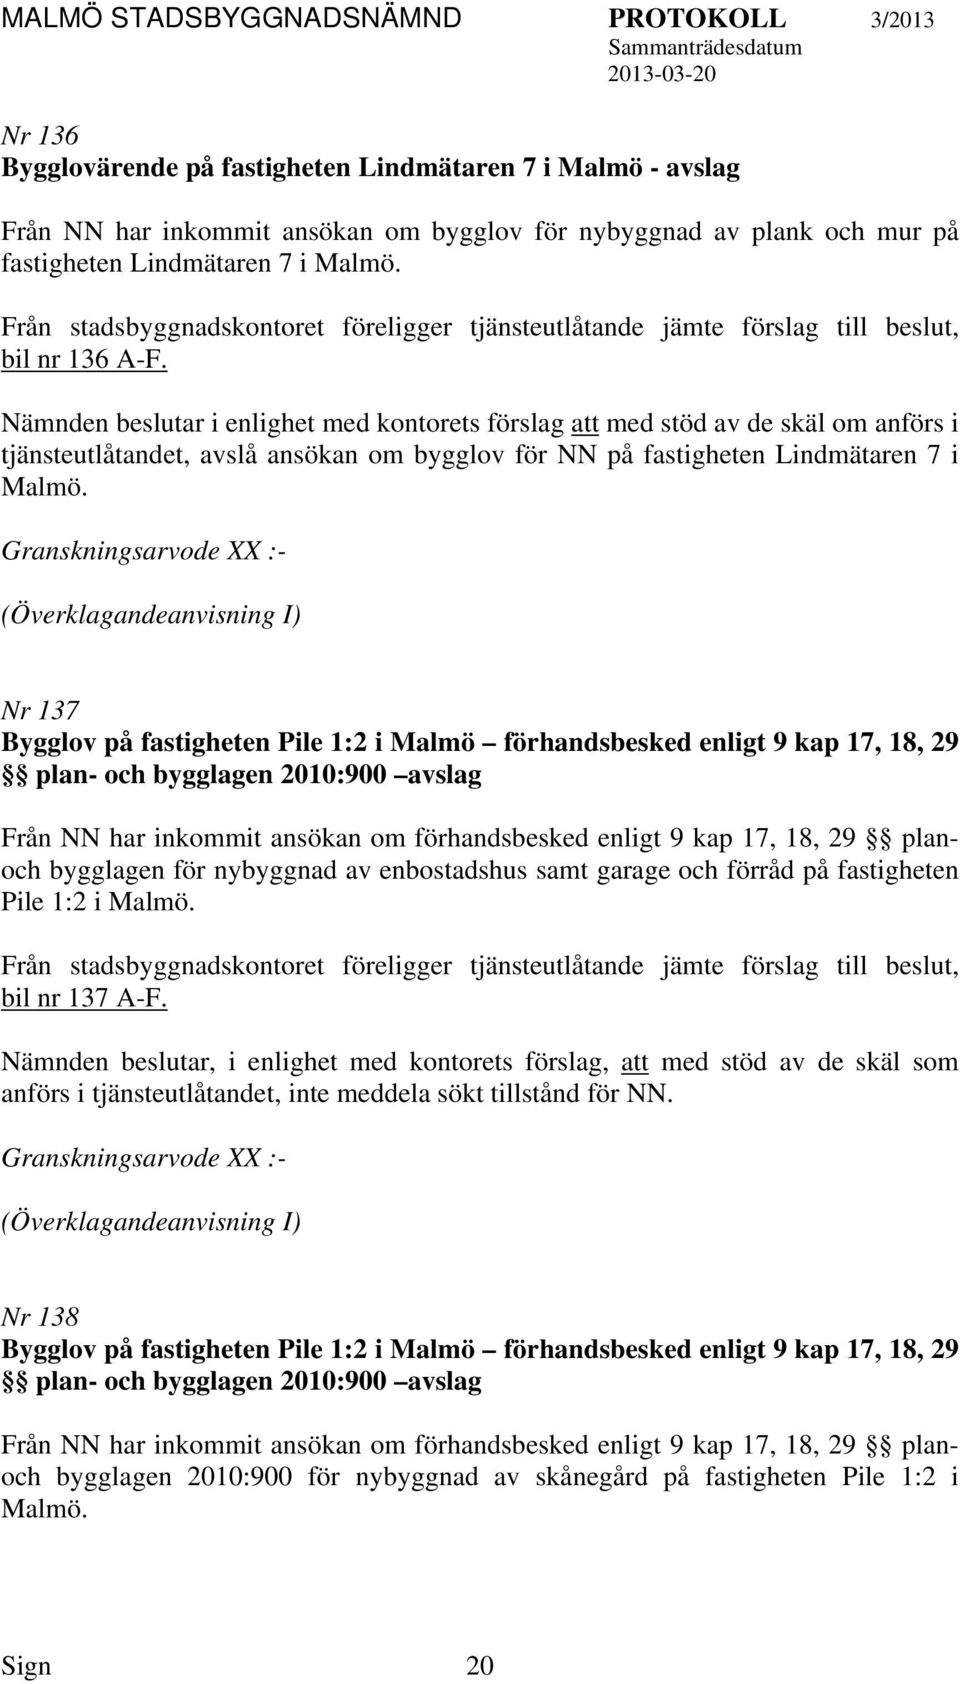 Granskningsarvode XX :- (Överklagandeanvisning I) Nr 137 Bygglov på fastigheten Pile 1:2 i Malmö förhandsbesked enligt 9 kap 17, 18, 29 plan- och bygglagen 2010:900 avslag Från NN har inkommit